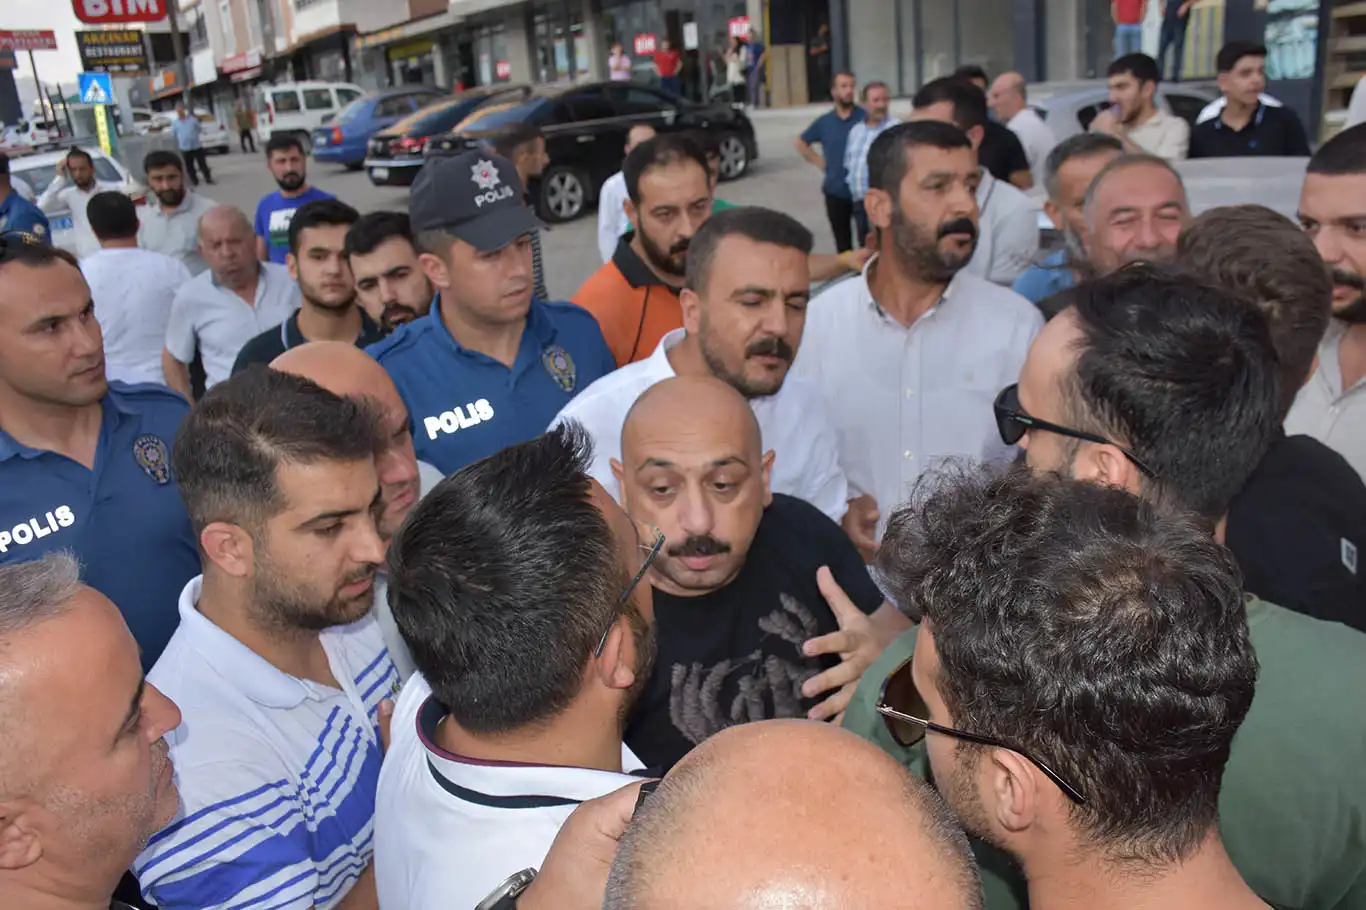 Bitlis'te vatandaşların "Ölüm yolu" için yaptığı basın açıklamasına polisten müdahale